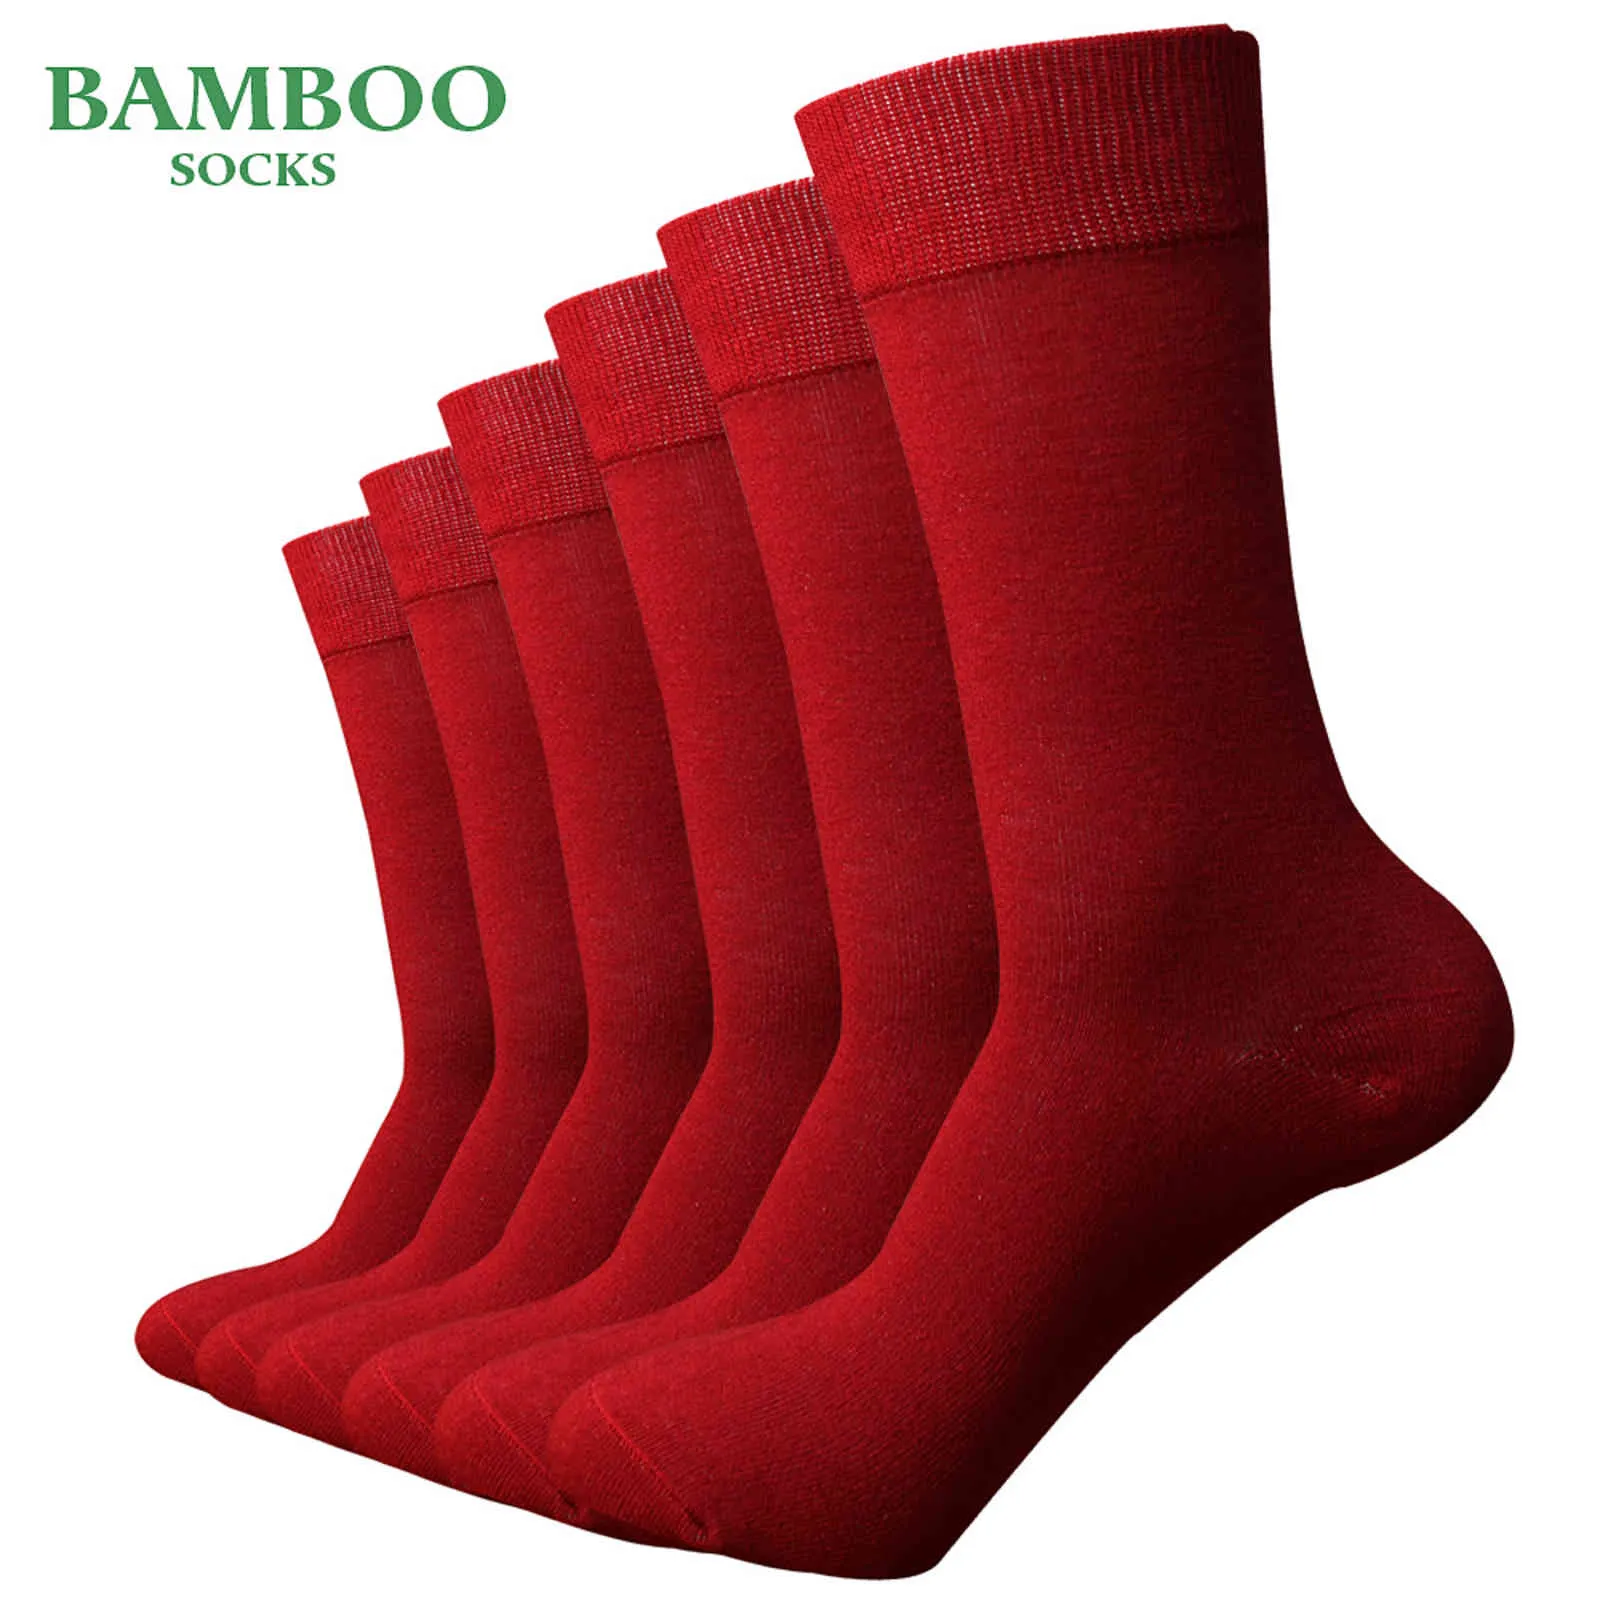 Match-up Men Bamboo Czerwony Oddychający Antybakteryjny Mężczyzna Sukni Biznesowa Sukni (6 pary / partia)